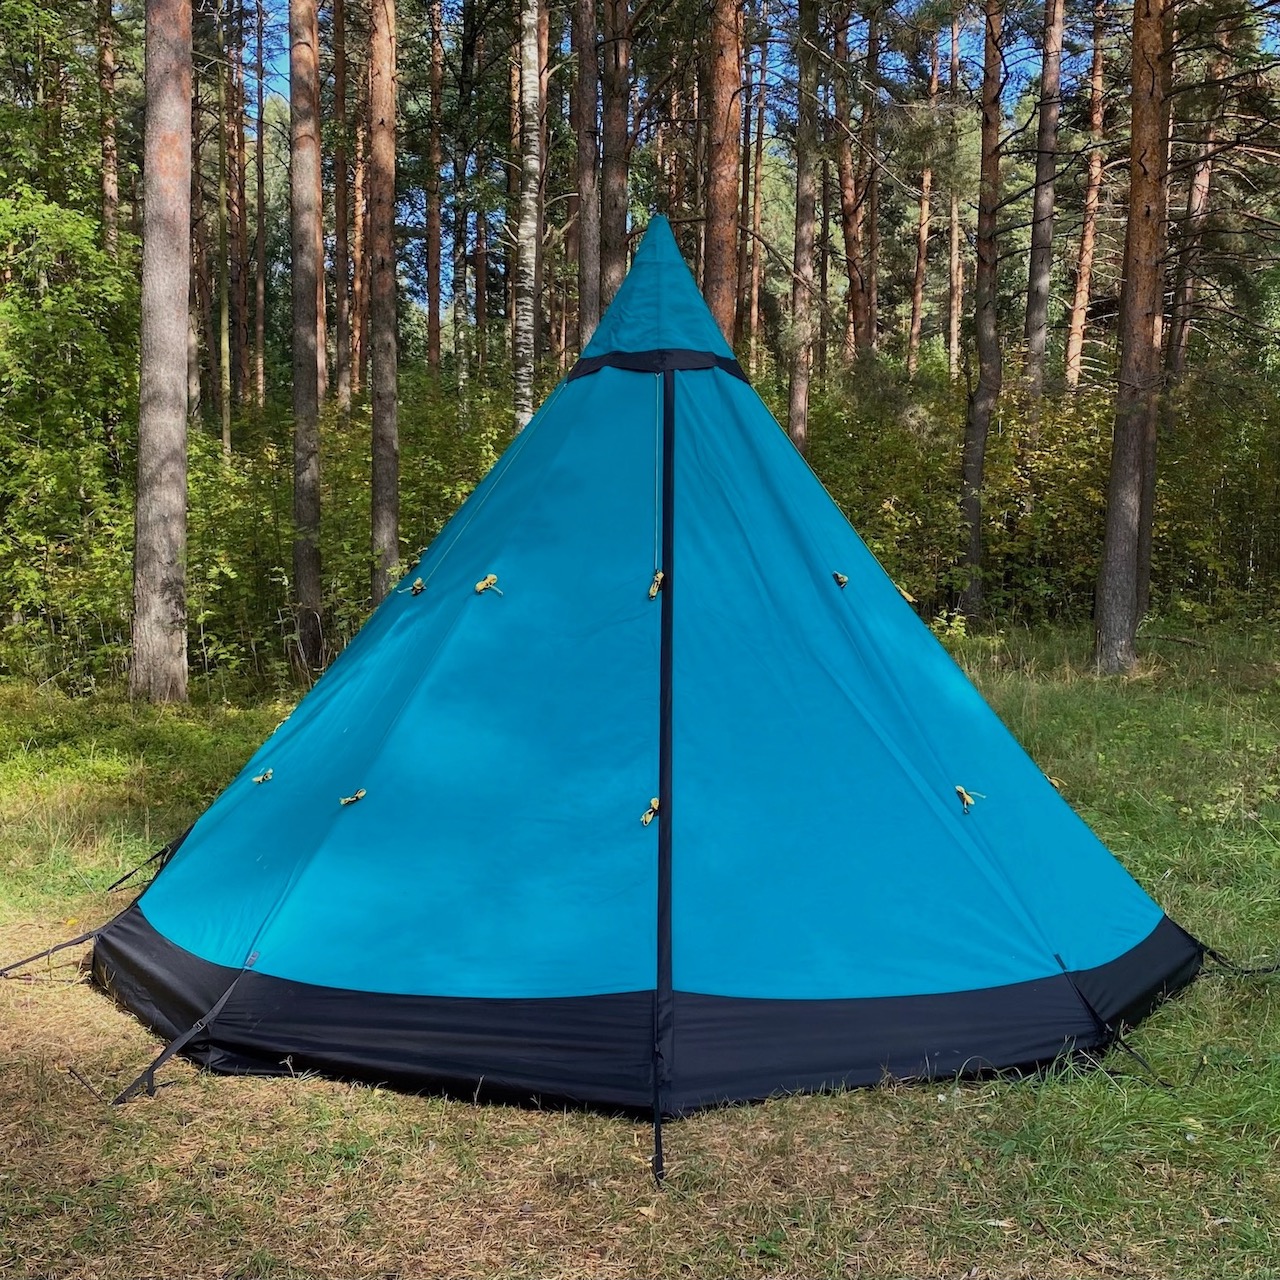 Туристическая палатка True Brands Tent 9 Pro Sunbrella аналог Tentipi Tent для путешествий и отдыха на природе